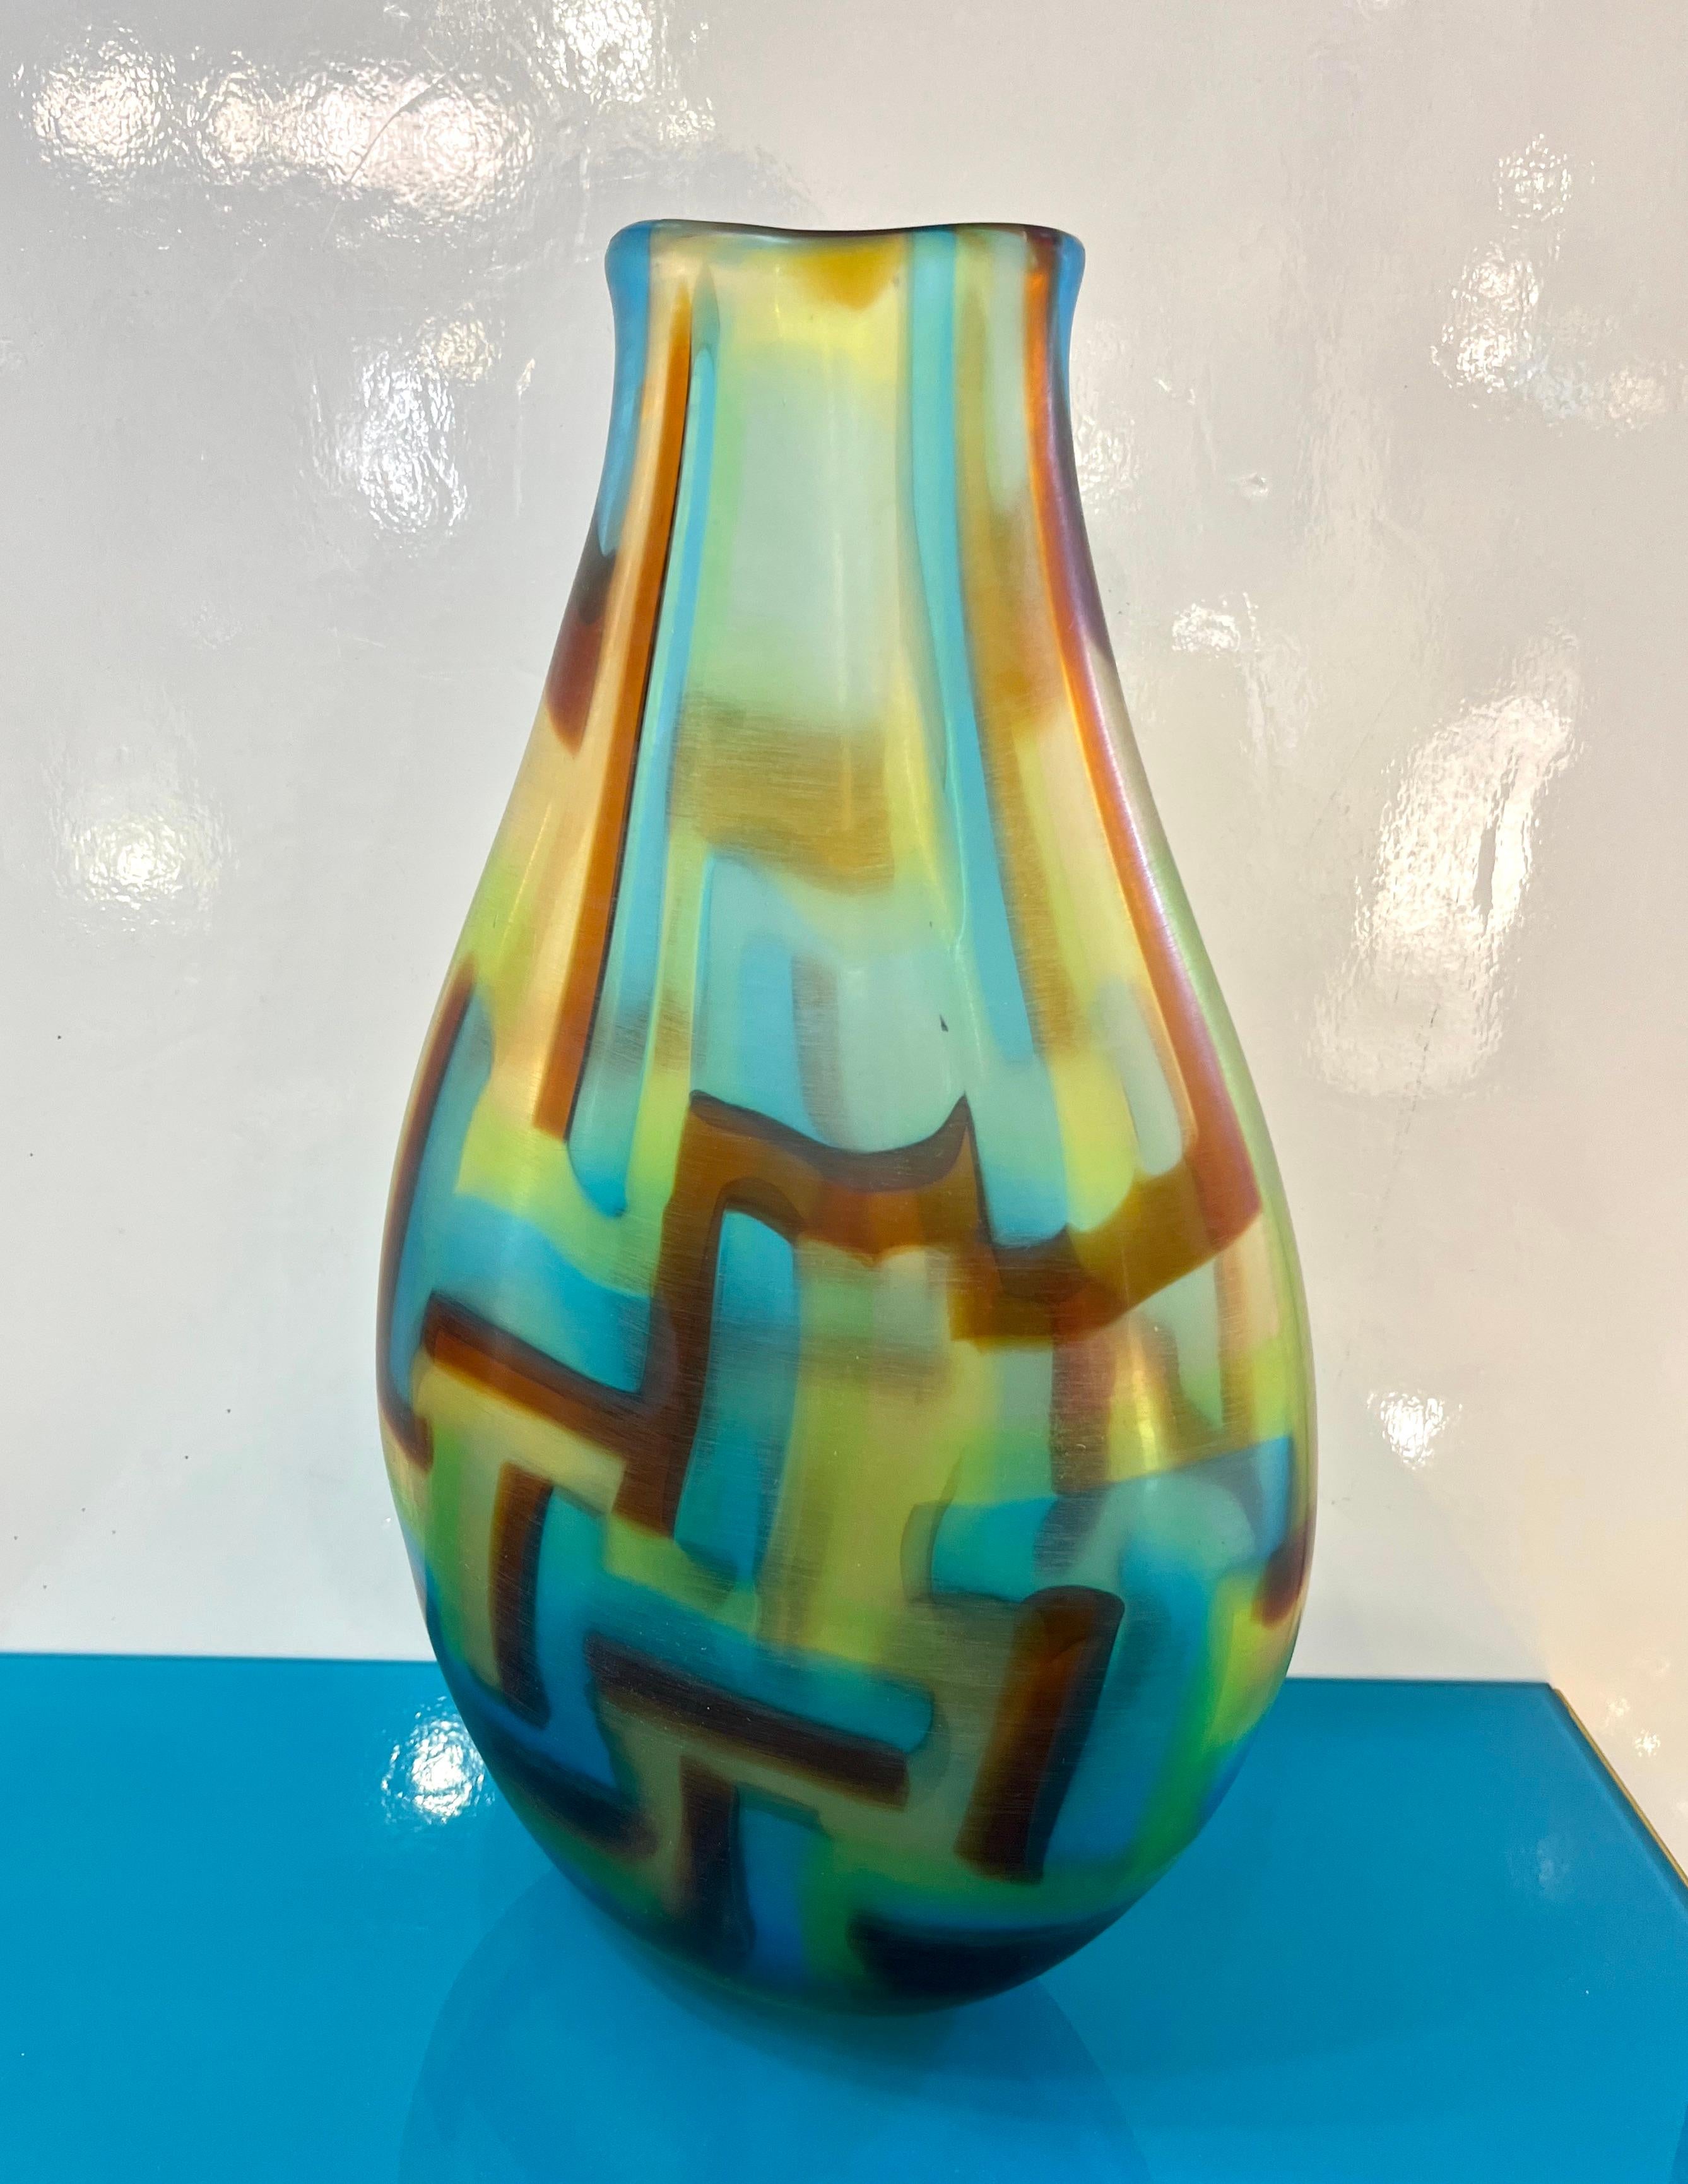 Vase aus venezianischem Murano-Glas, signiert von Afro Celotto 2001, gearbeitet als abstraktes modernes Gemälde, mit gewelltem Rand, der Bewegung hinzufügt, kostbar gemacht durch die Fähigkeit des Glasbläsermeisters, das Glas zu kontrollieren, wie